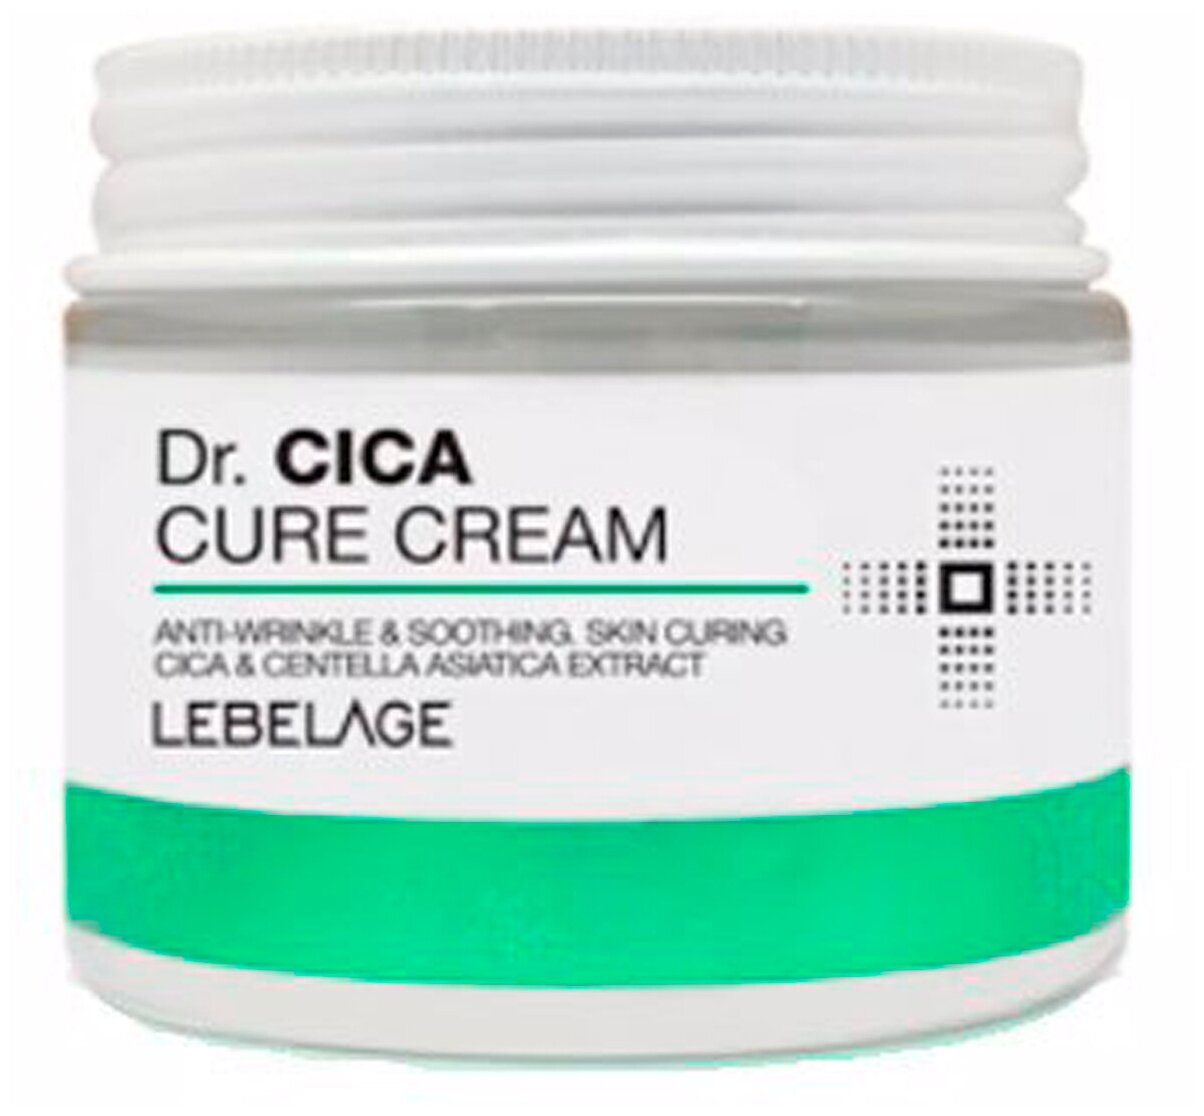 Lebelage Dr. Cica Cure Cream Крем для лица с центеллой азиатской 70 мл